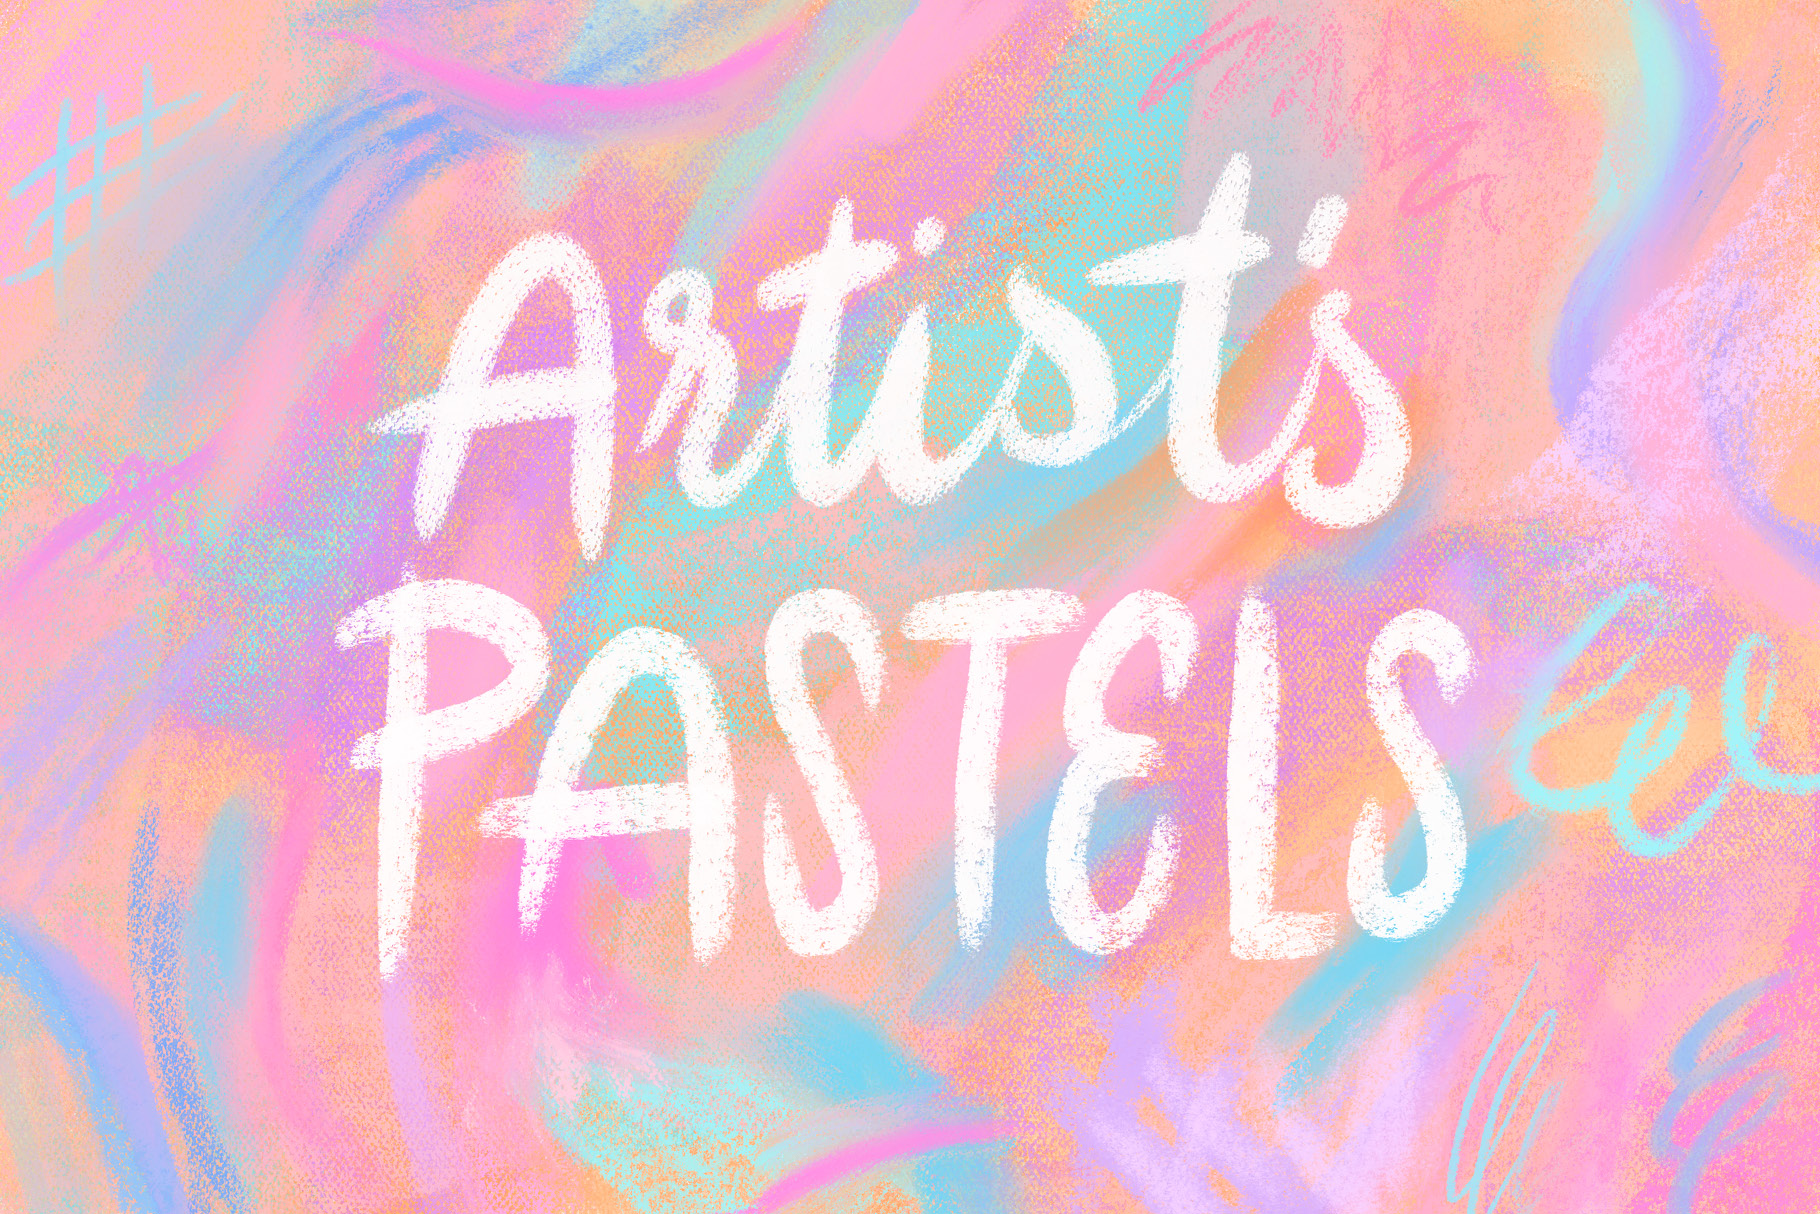 Artists Pastels Procreate 5 Procreate Brushes by Bardot Brush